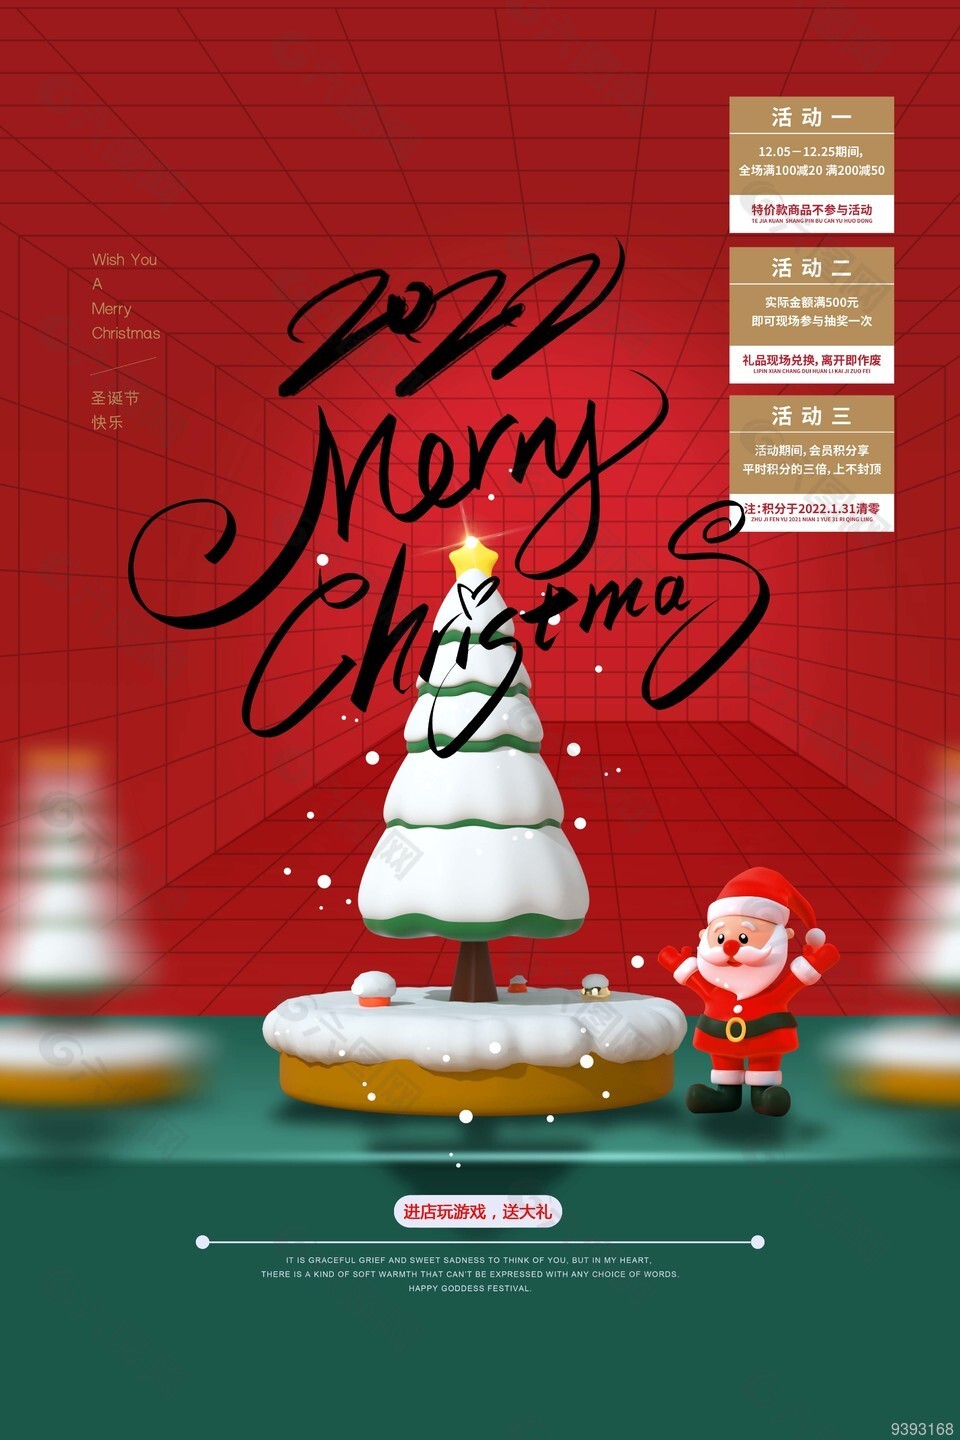 12.25圣诞送大礼活动促销海报设计